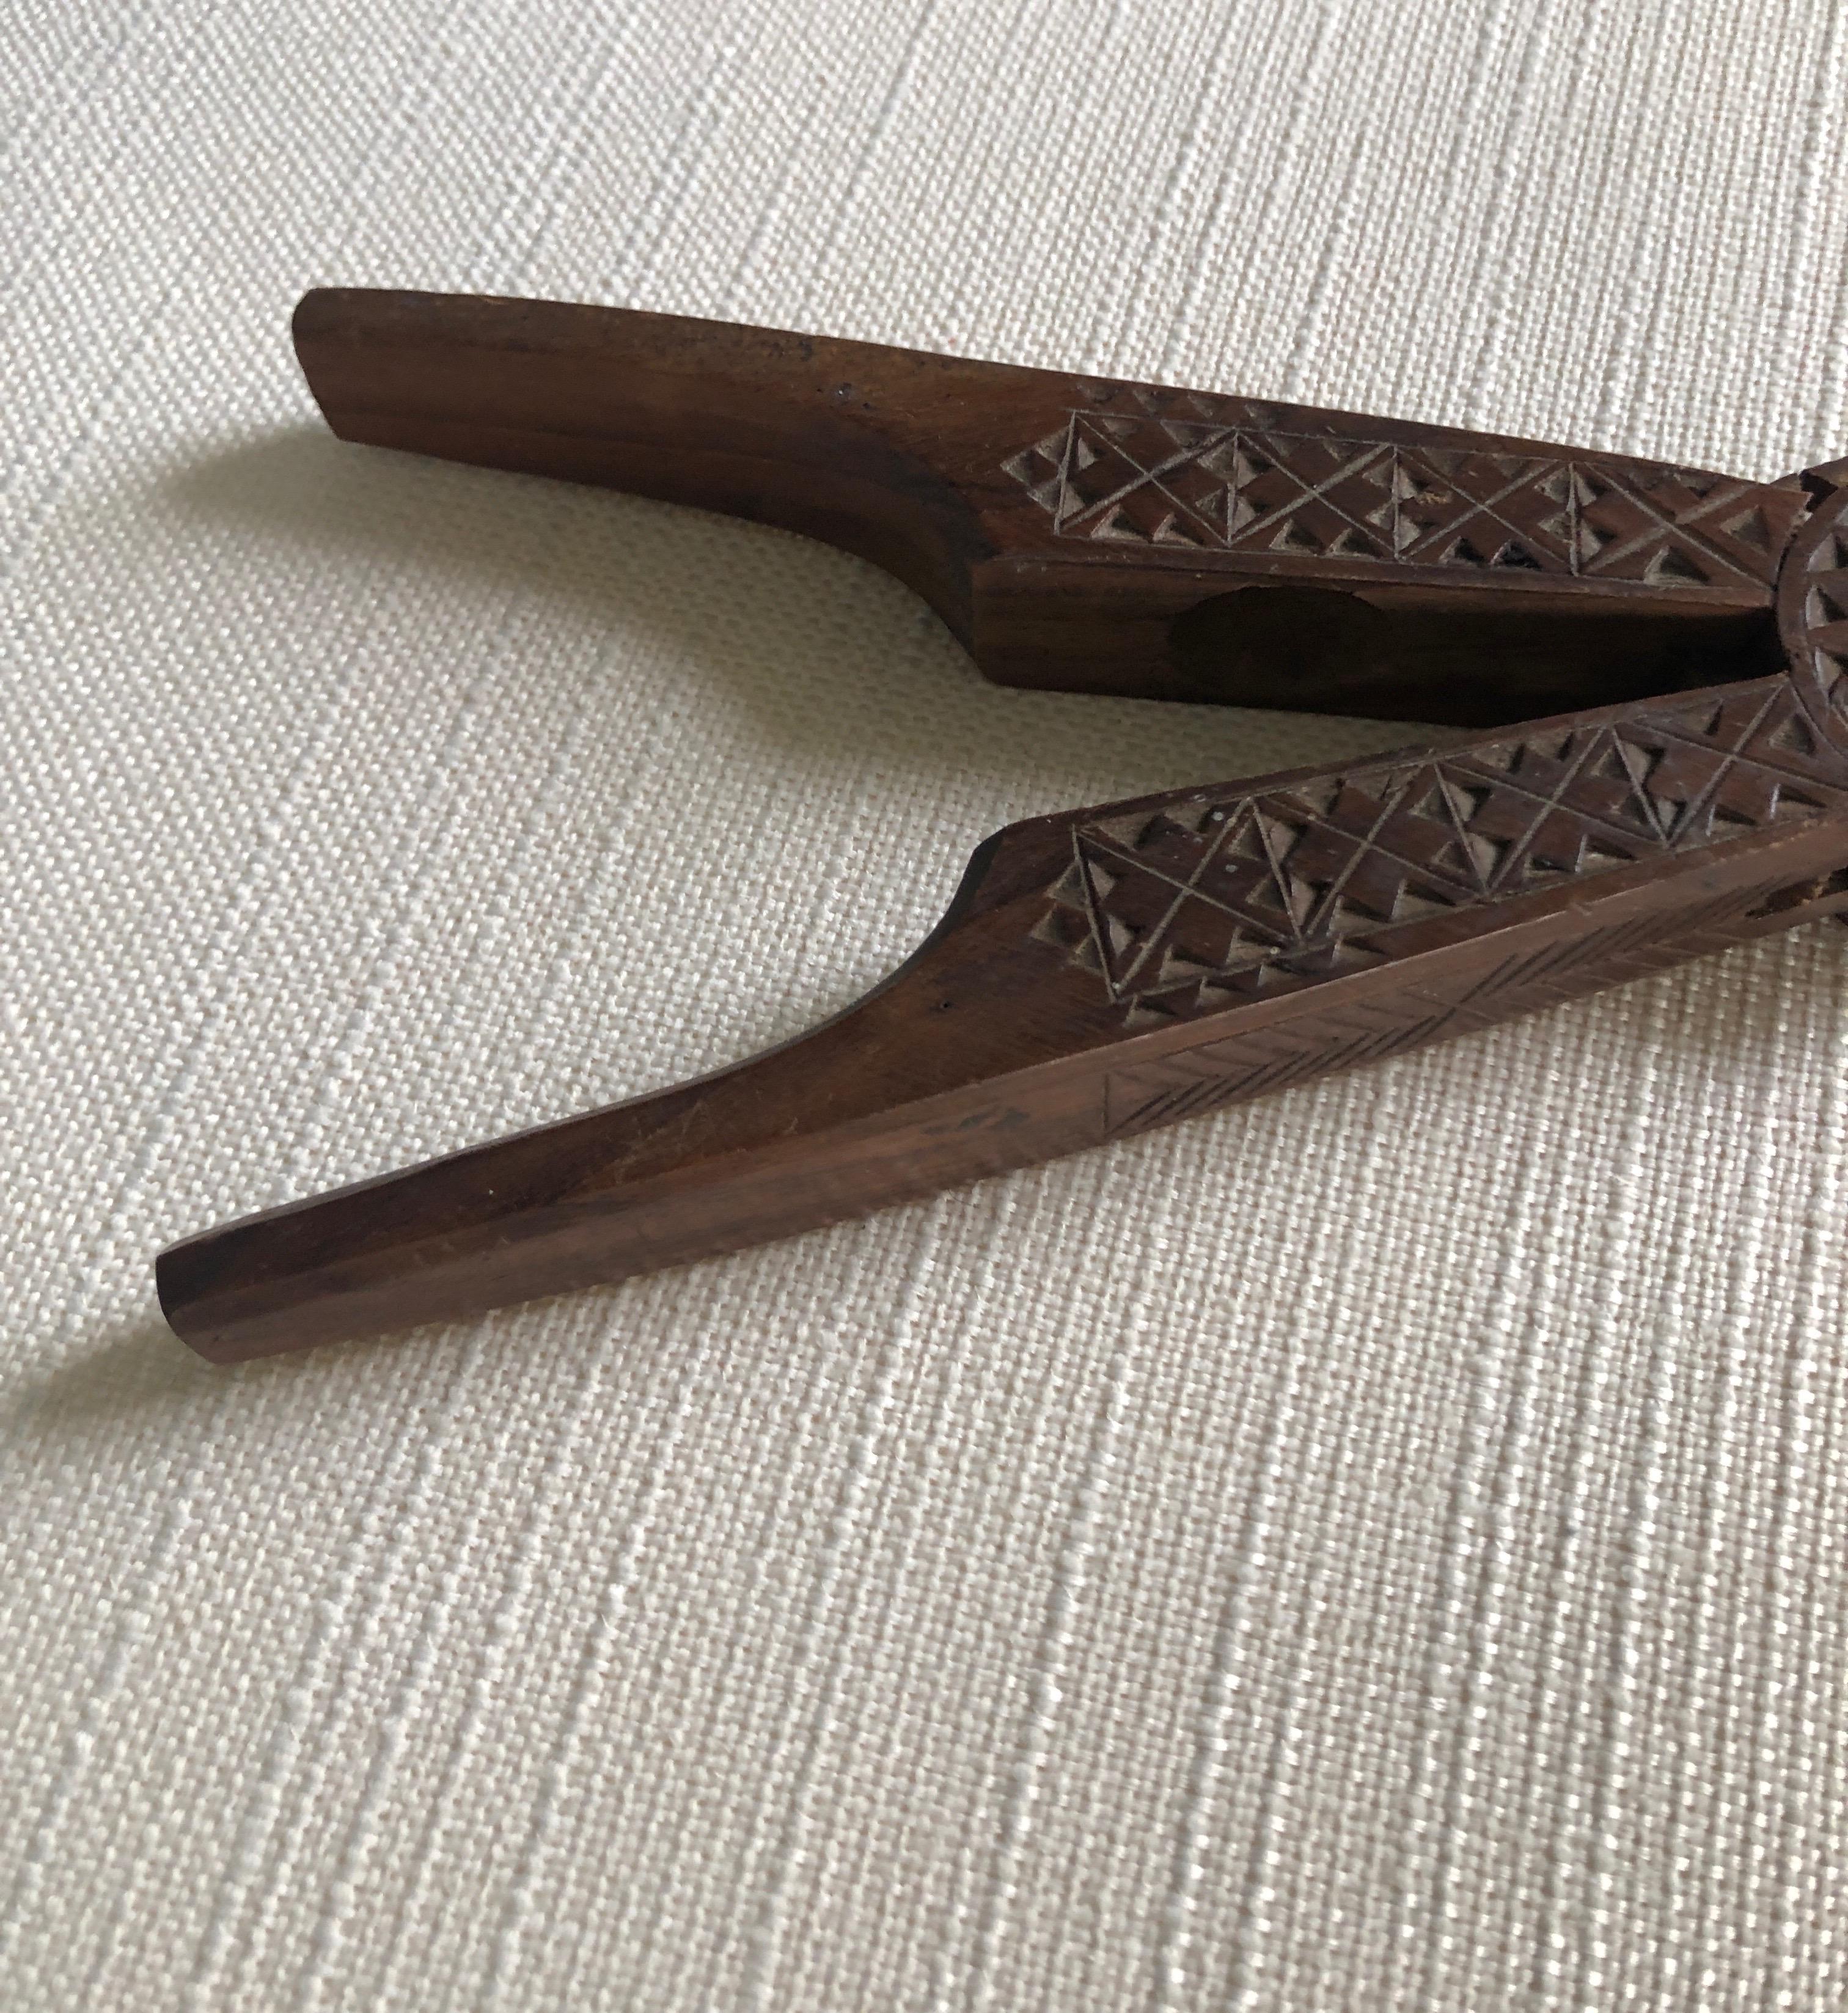 Vintage hand carved Indian wood nutcracker.
Size: 8